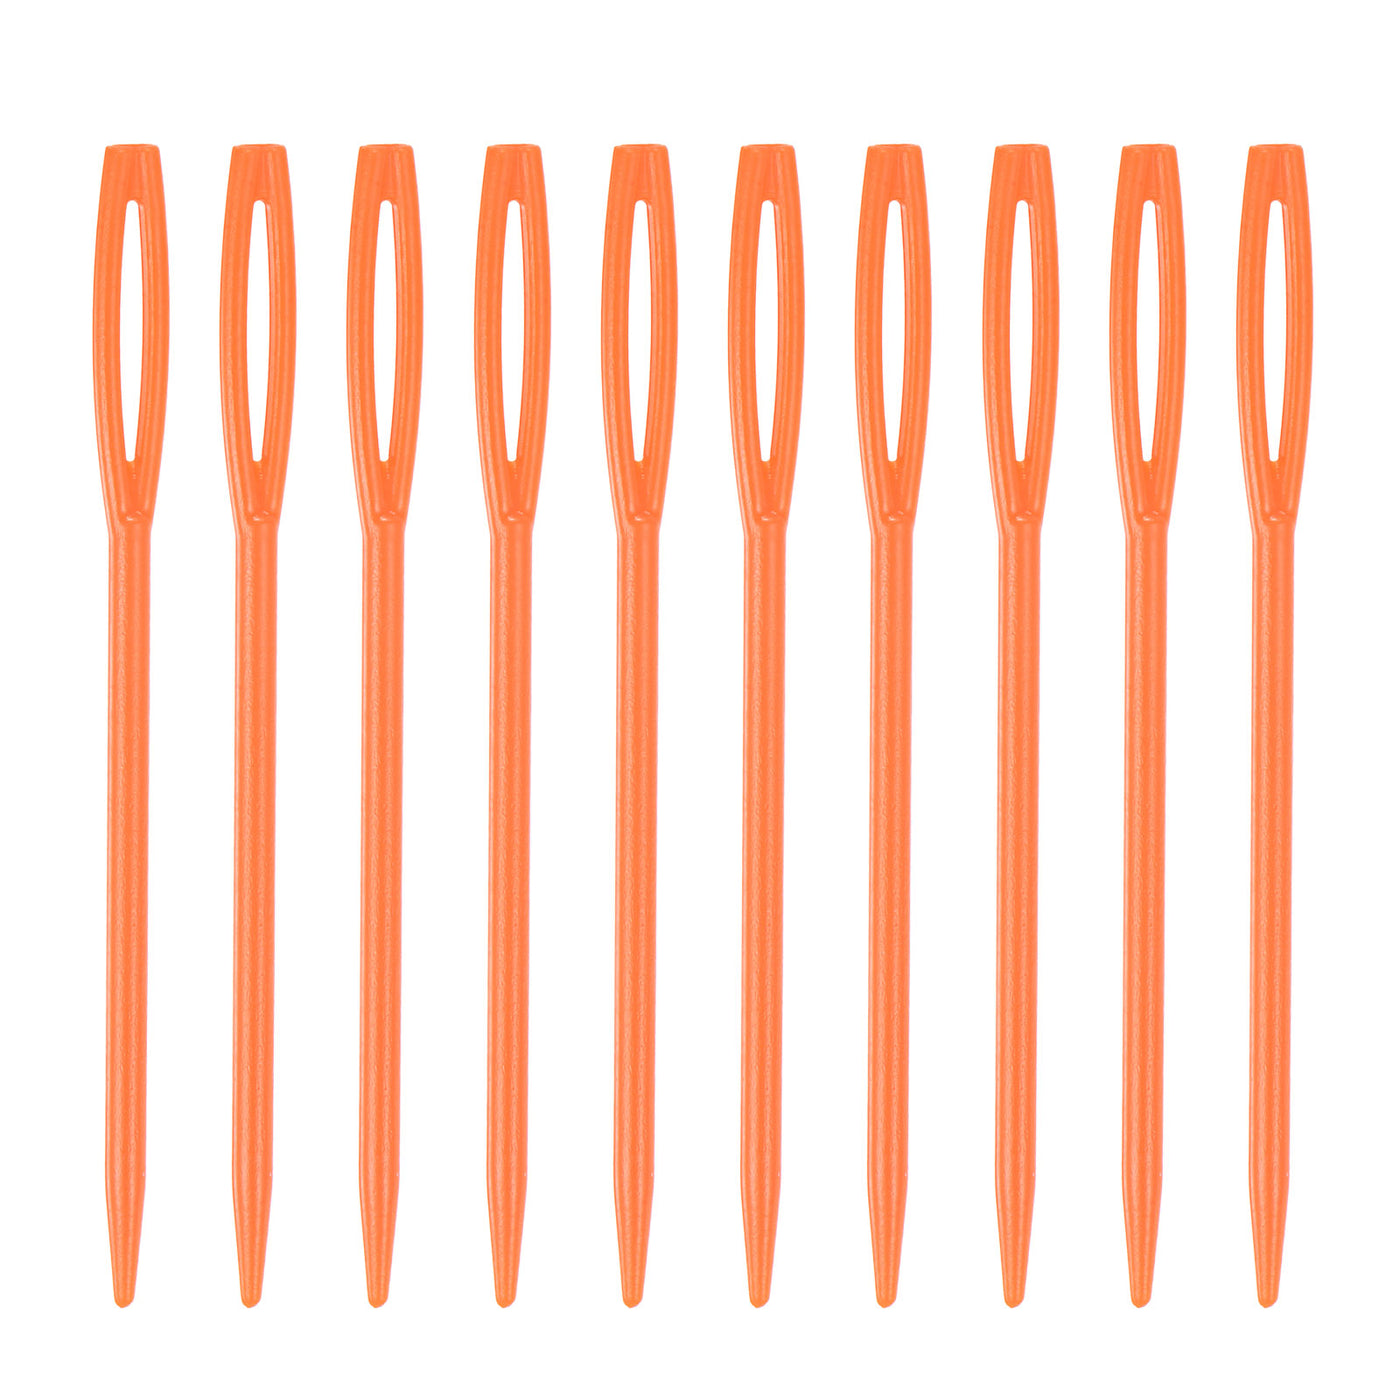 Harfington 200pcs Plastic Sewing Needles, 7cm Large Eye Blunt Learning Needles, Orange